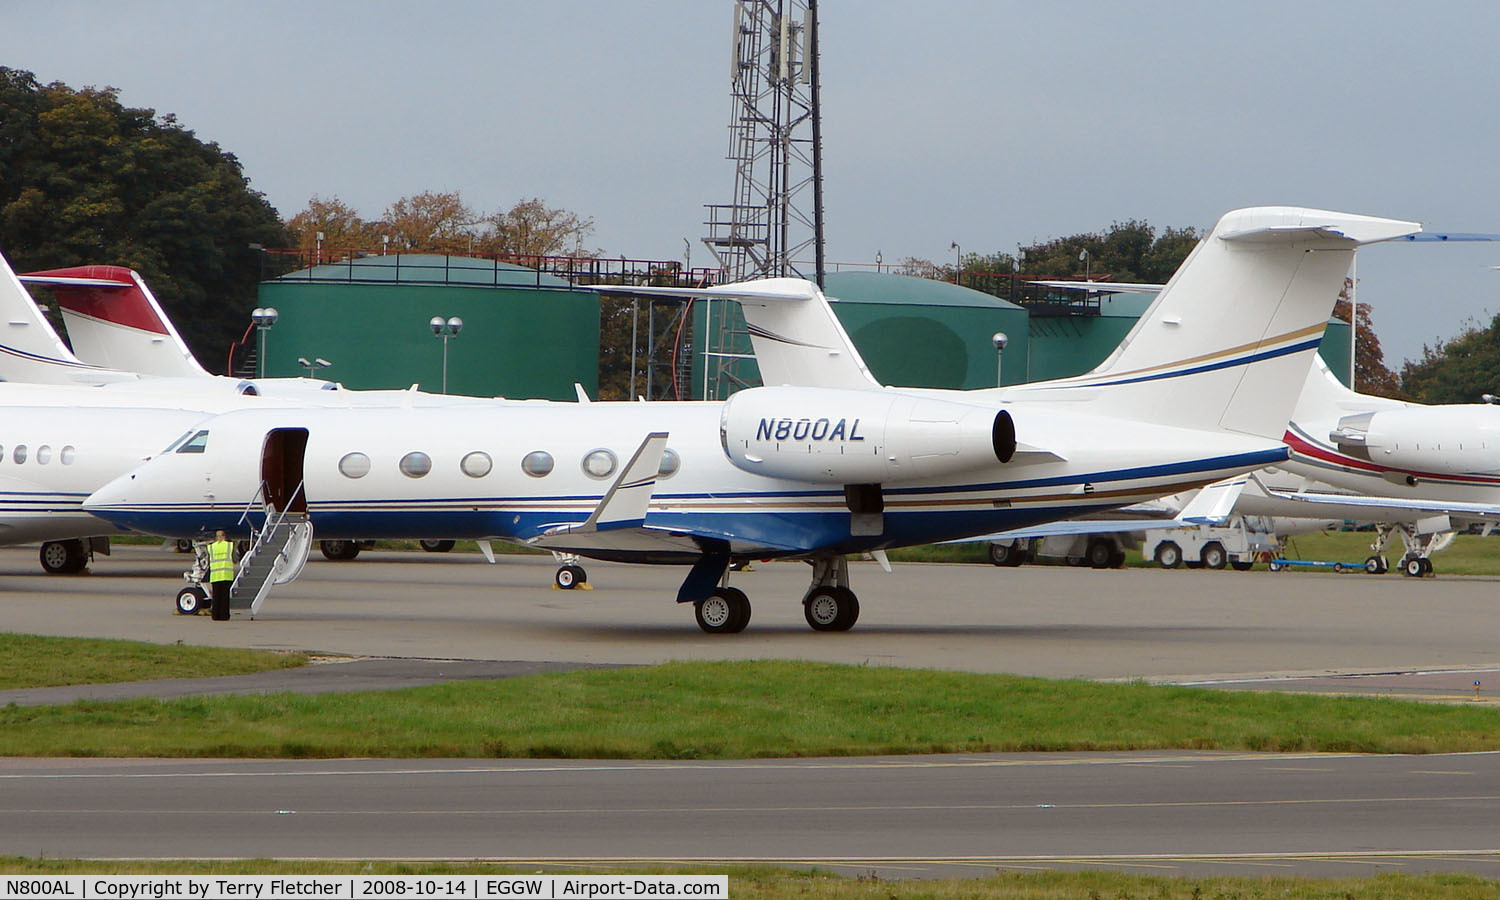 N800AL, 2007 Gulfstream Aerospace GIV-X C/N 4087, Gulfstream G450 at Luton